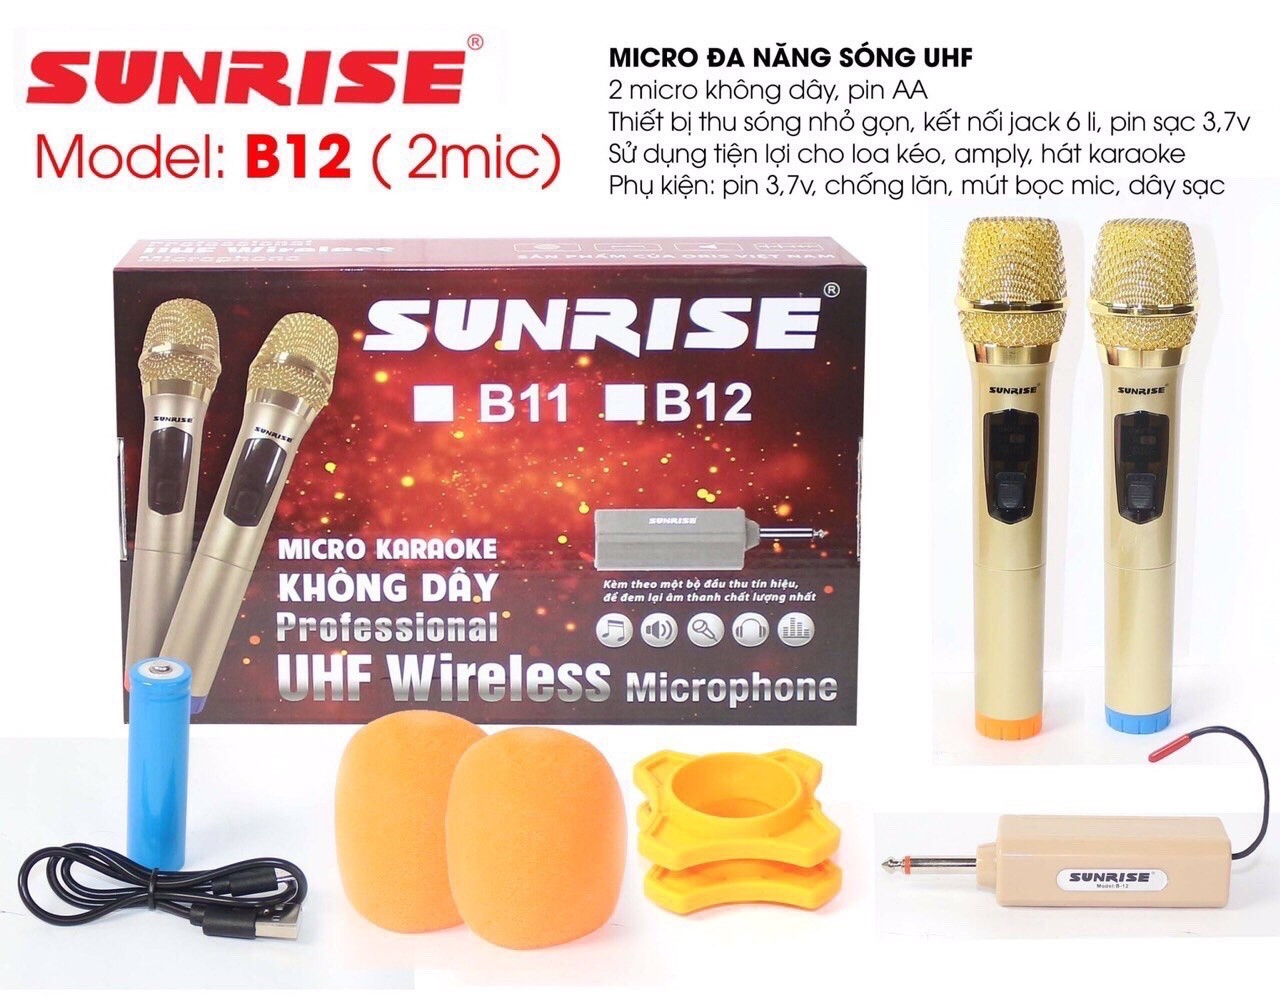 Micro không dây karaoke sunrise B12 dòng 2 micro, mic đa năng sử dụng sóng UHF, chống hú, độ nhạy cao